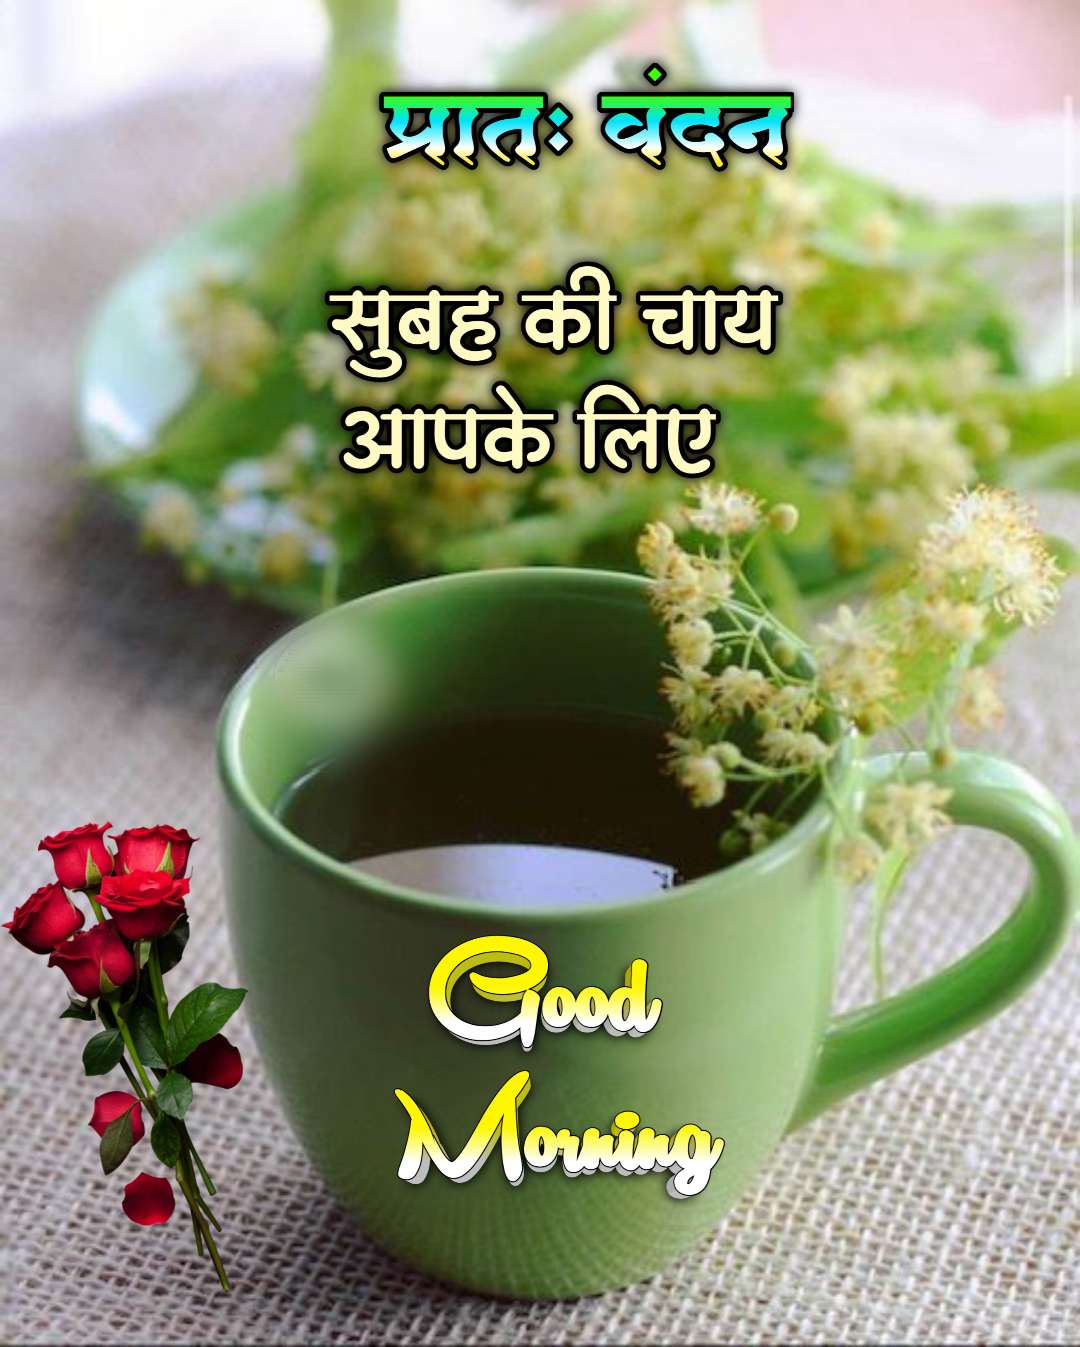 Good Morning Images Hindi ()